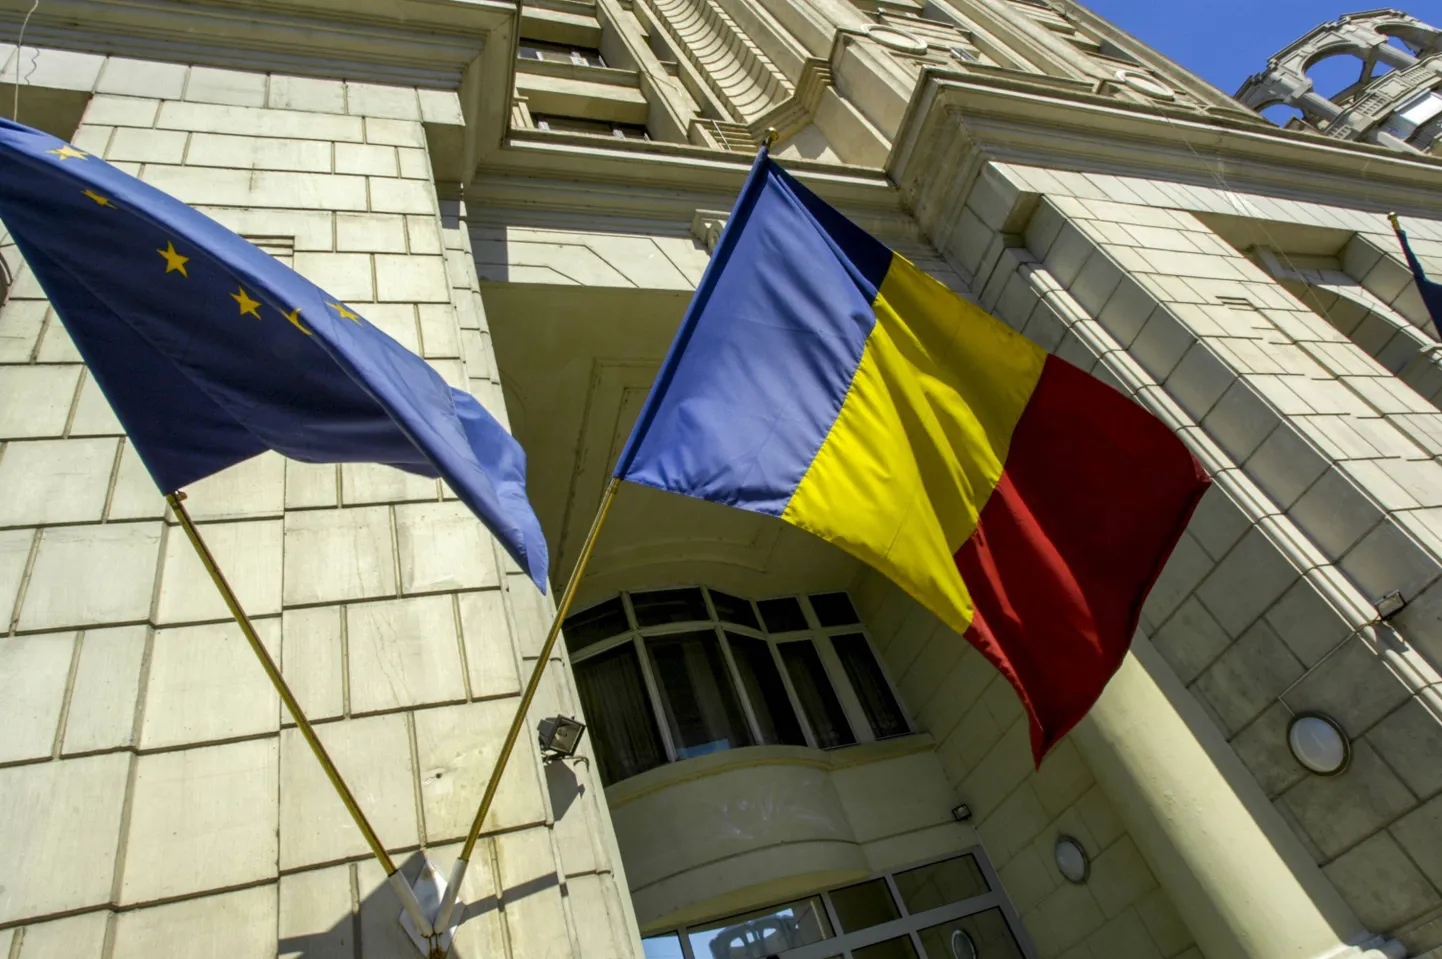 Kõrvuti asetsevad Euroopa Liidu ja Rumeenia lipp.